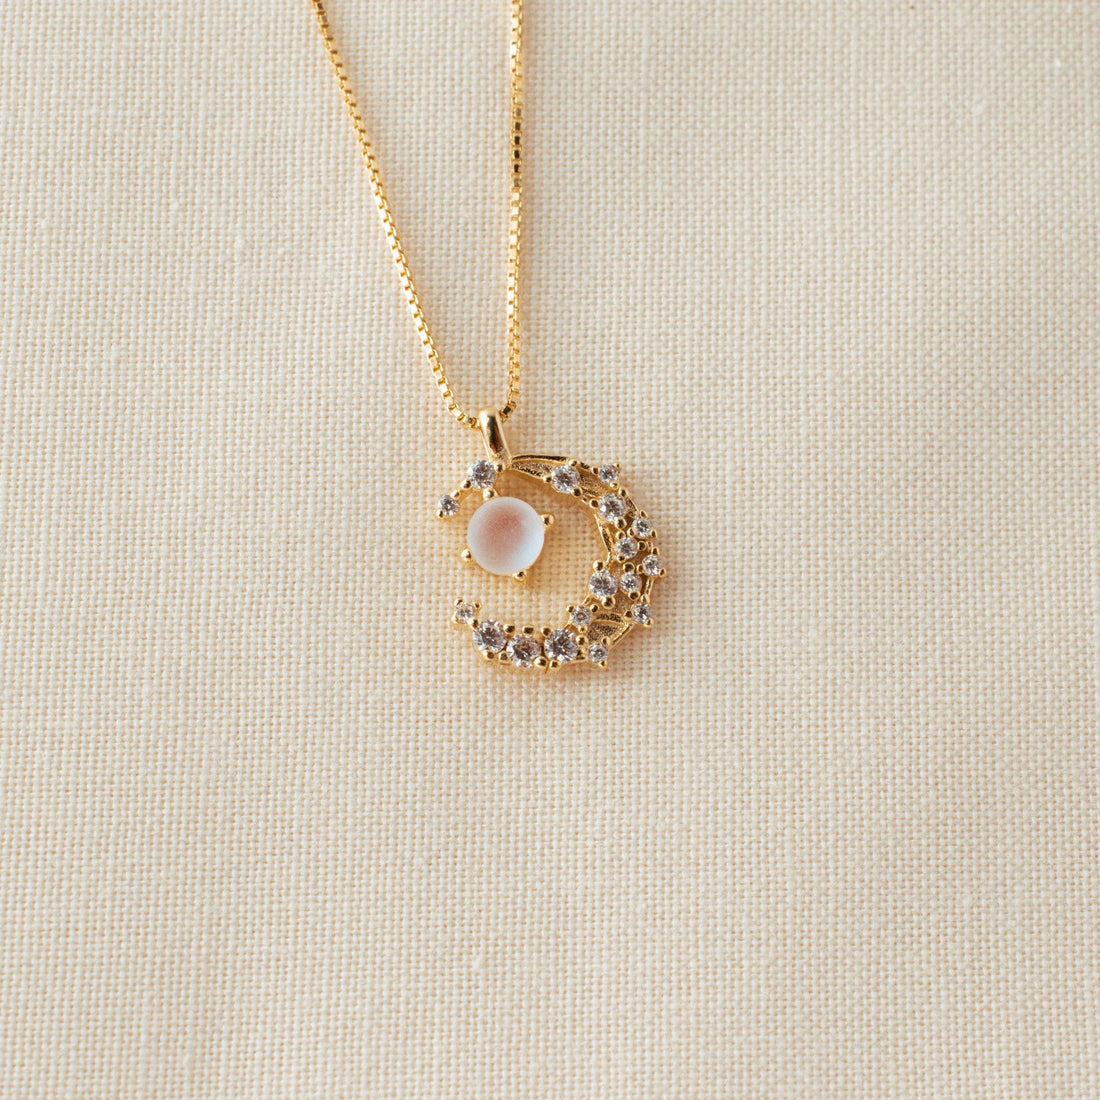 Sparkling Moon Necklace | avantejewel.com